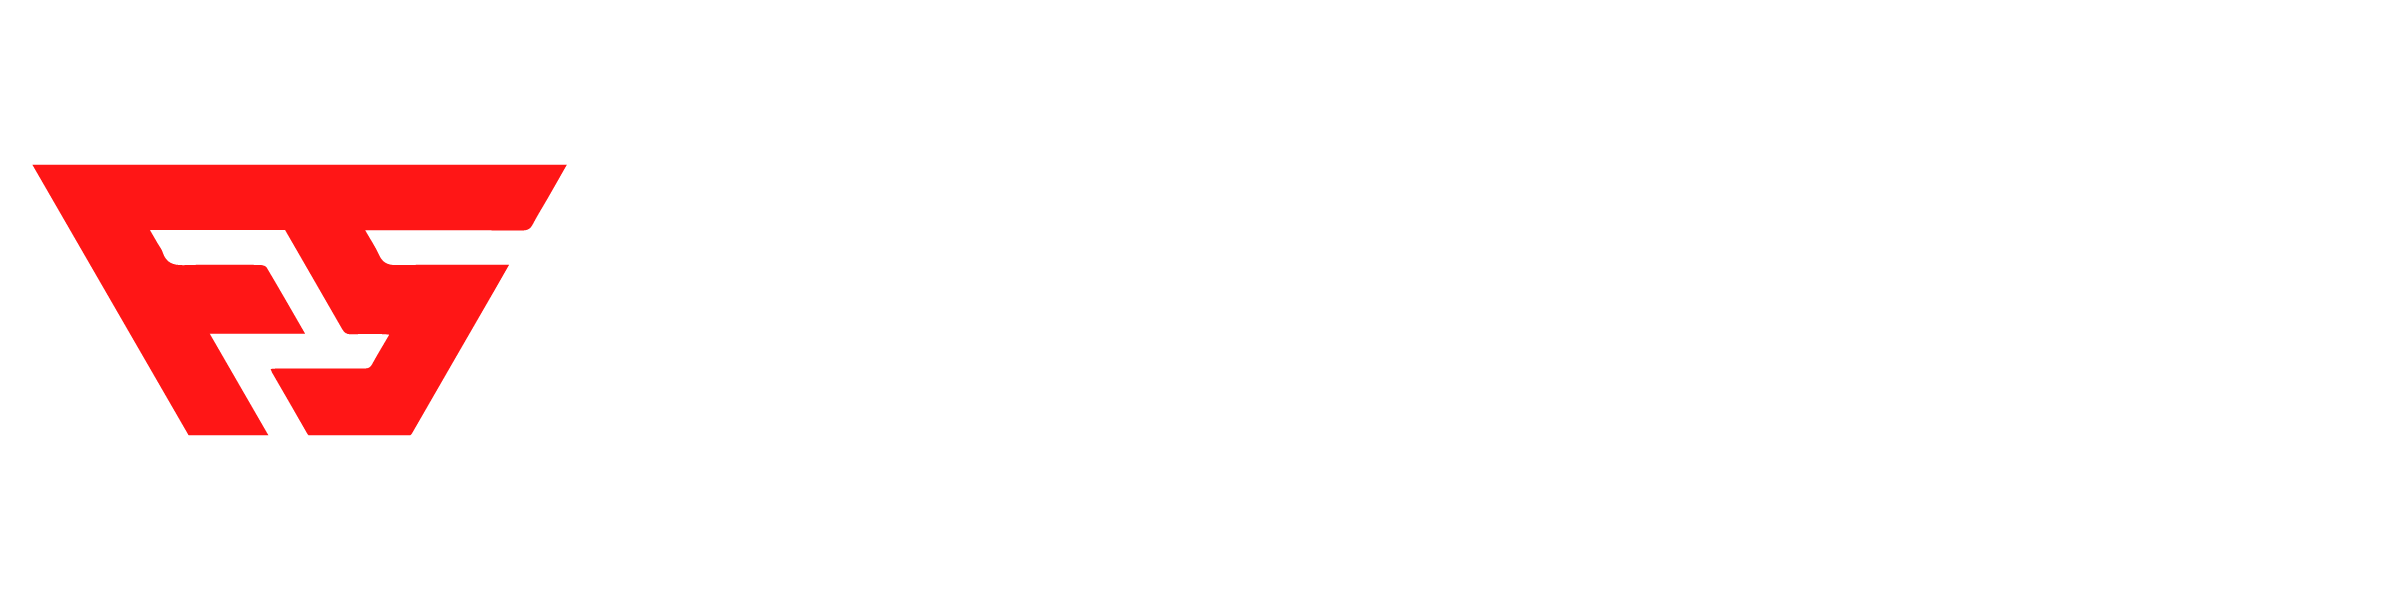 Film Studio News